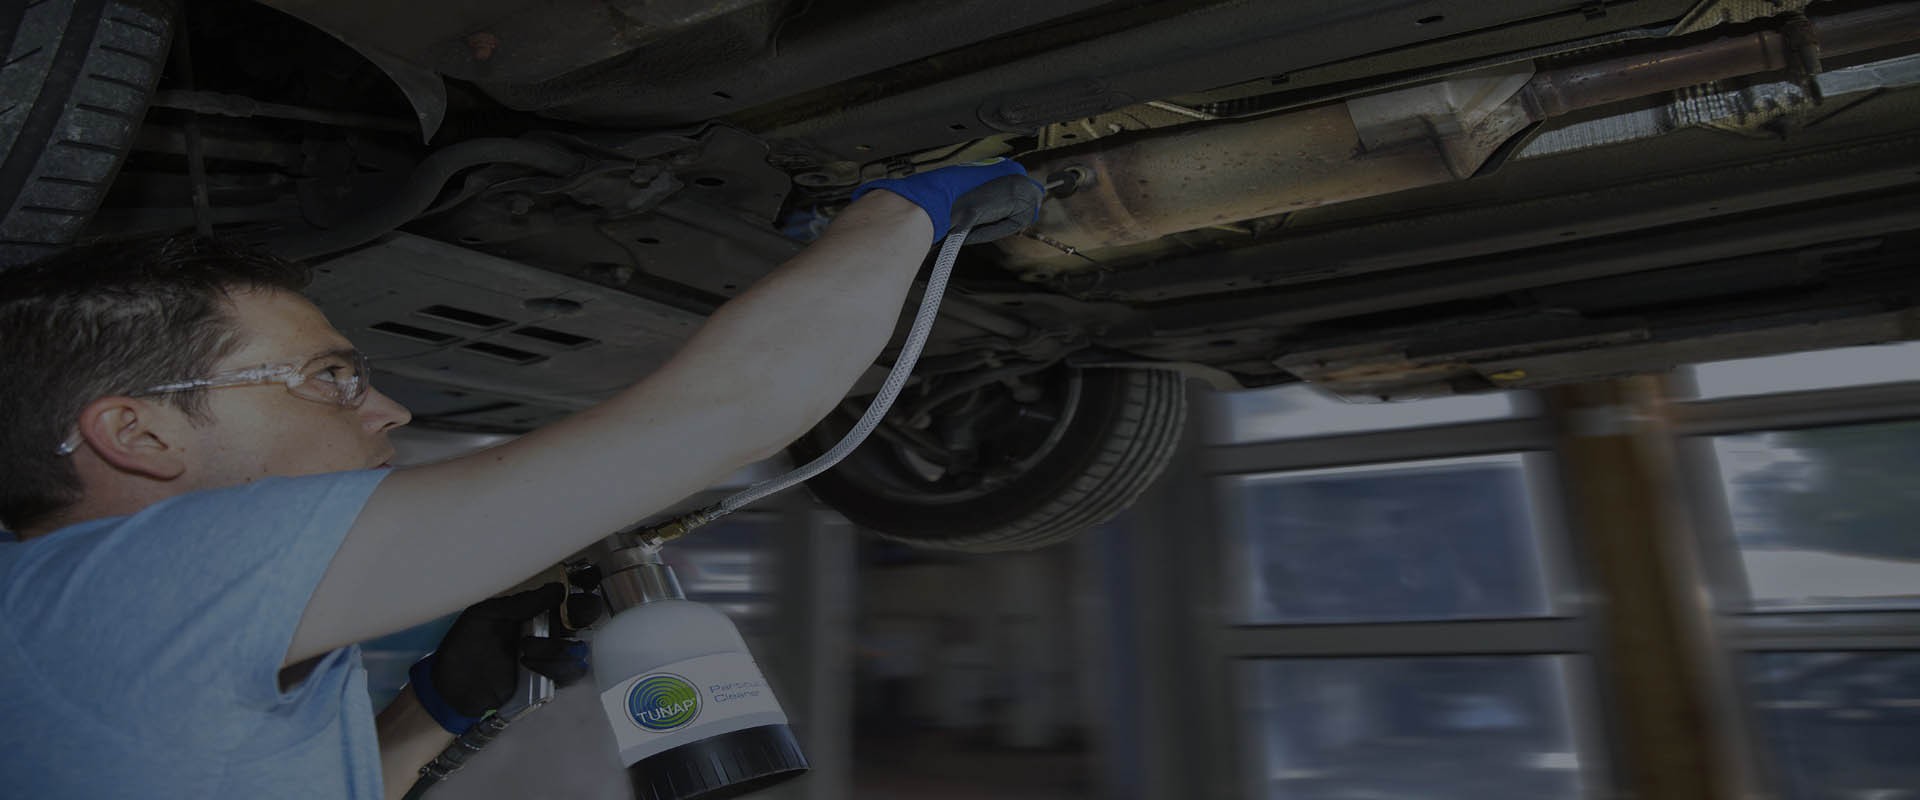 Mekaniker under en upplyft bil använder en koppspruta med slang och givare för att rengöra ett dieselpartikelfilter